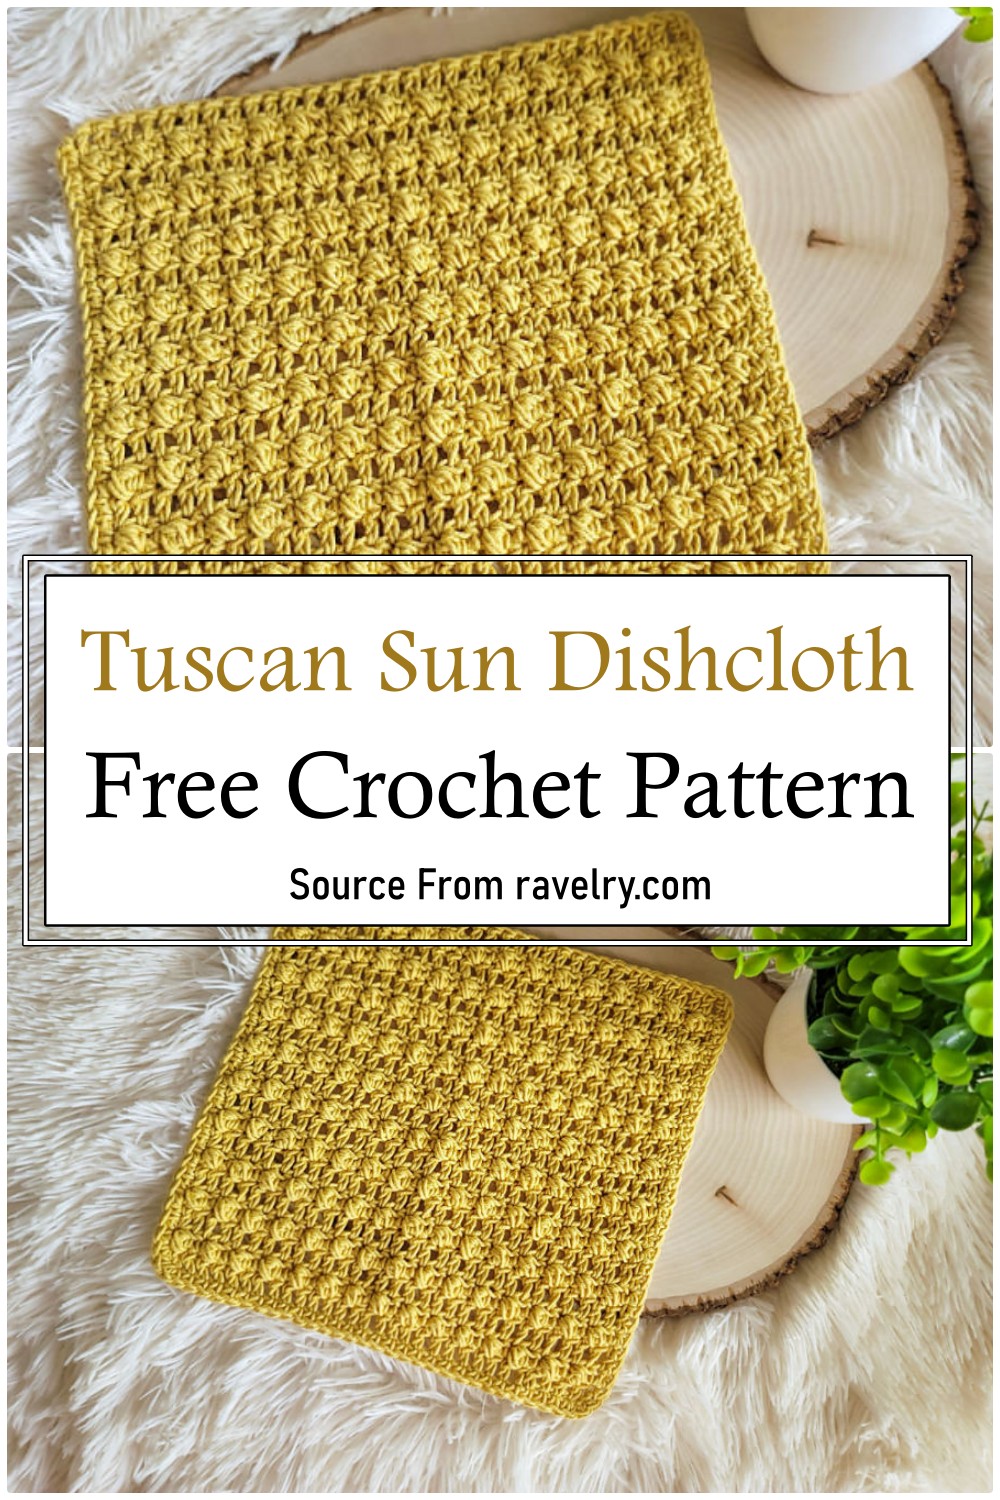 Tuscan Sun Dishcloth